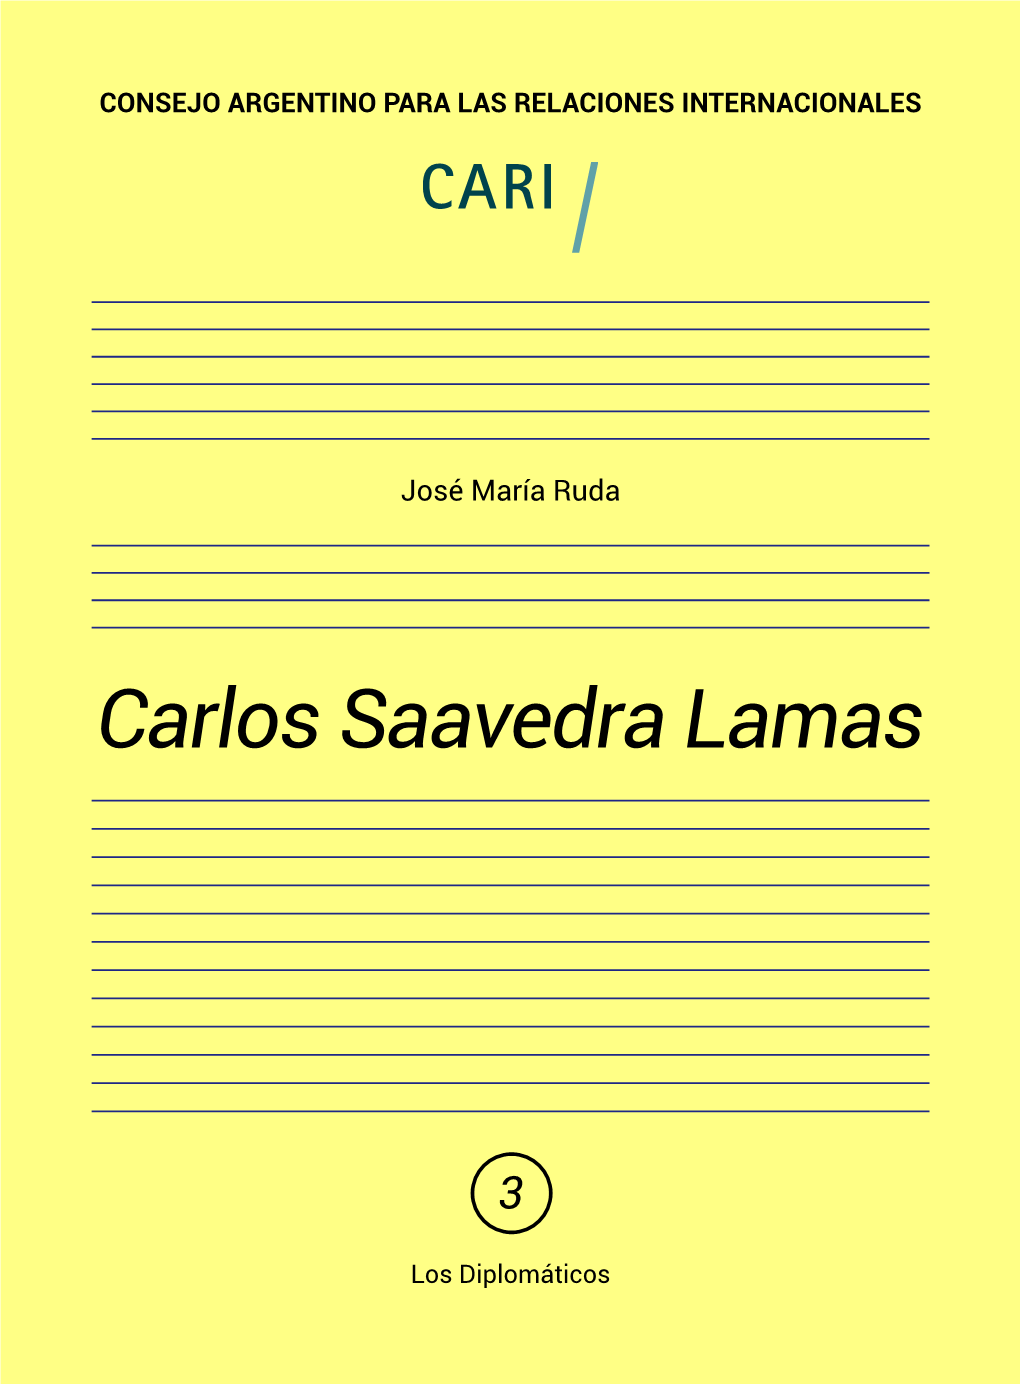 Carlos Saavedra Lamas